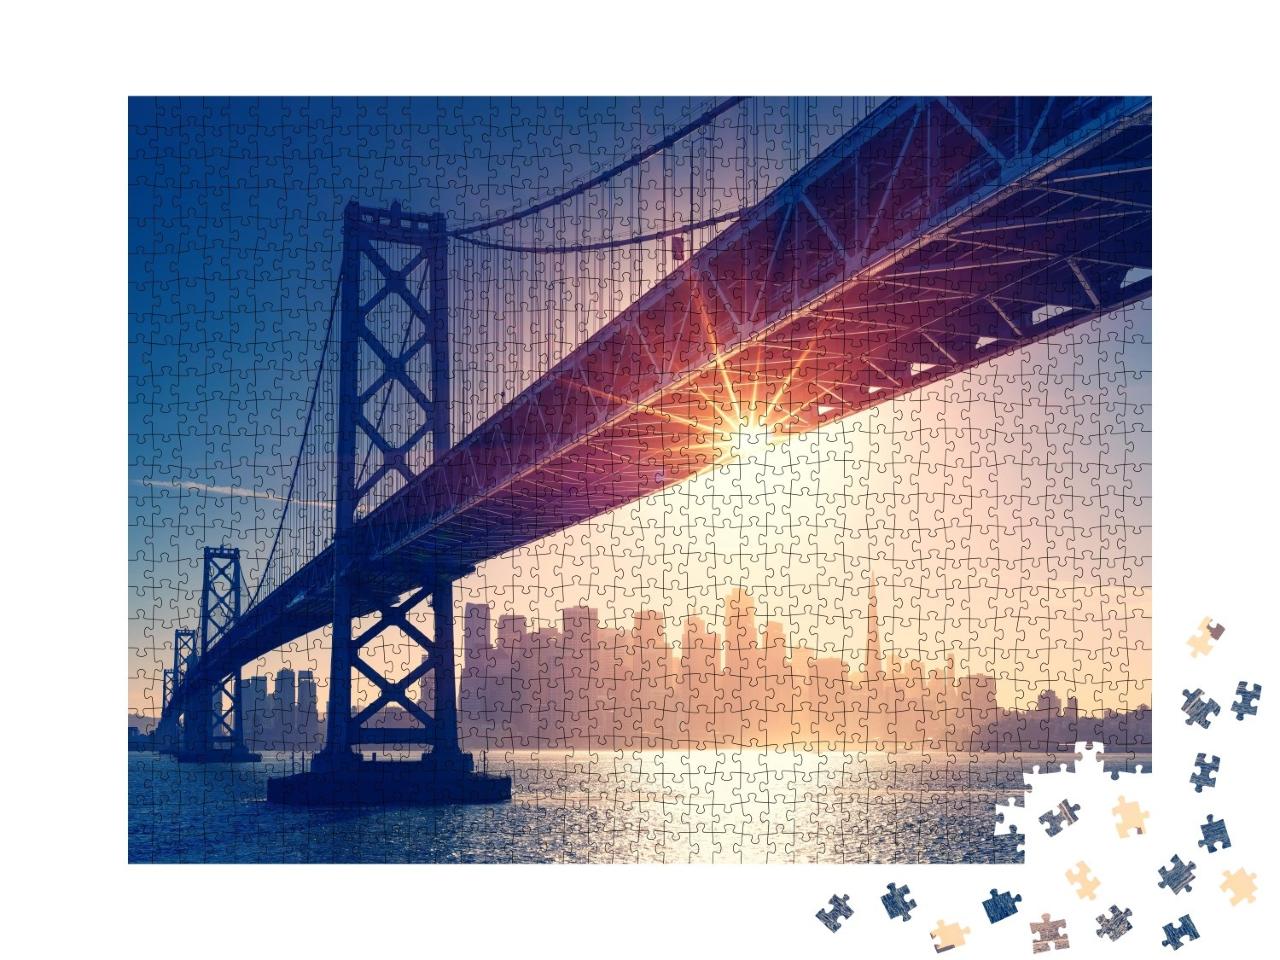 Puzzle de 1000 pièces « Vue rétro de la ligne d'horizon de San Francisco »